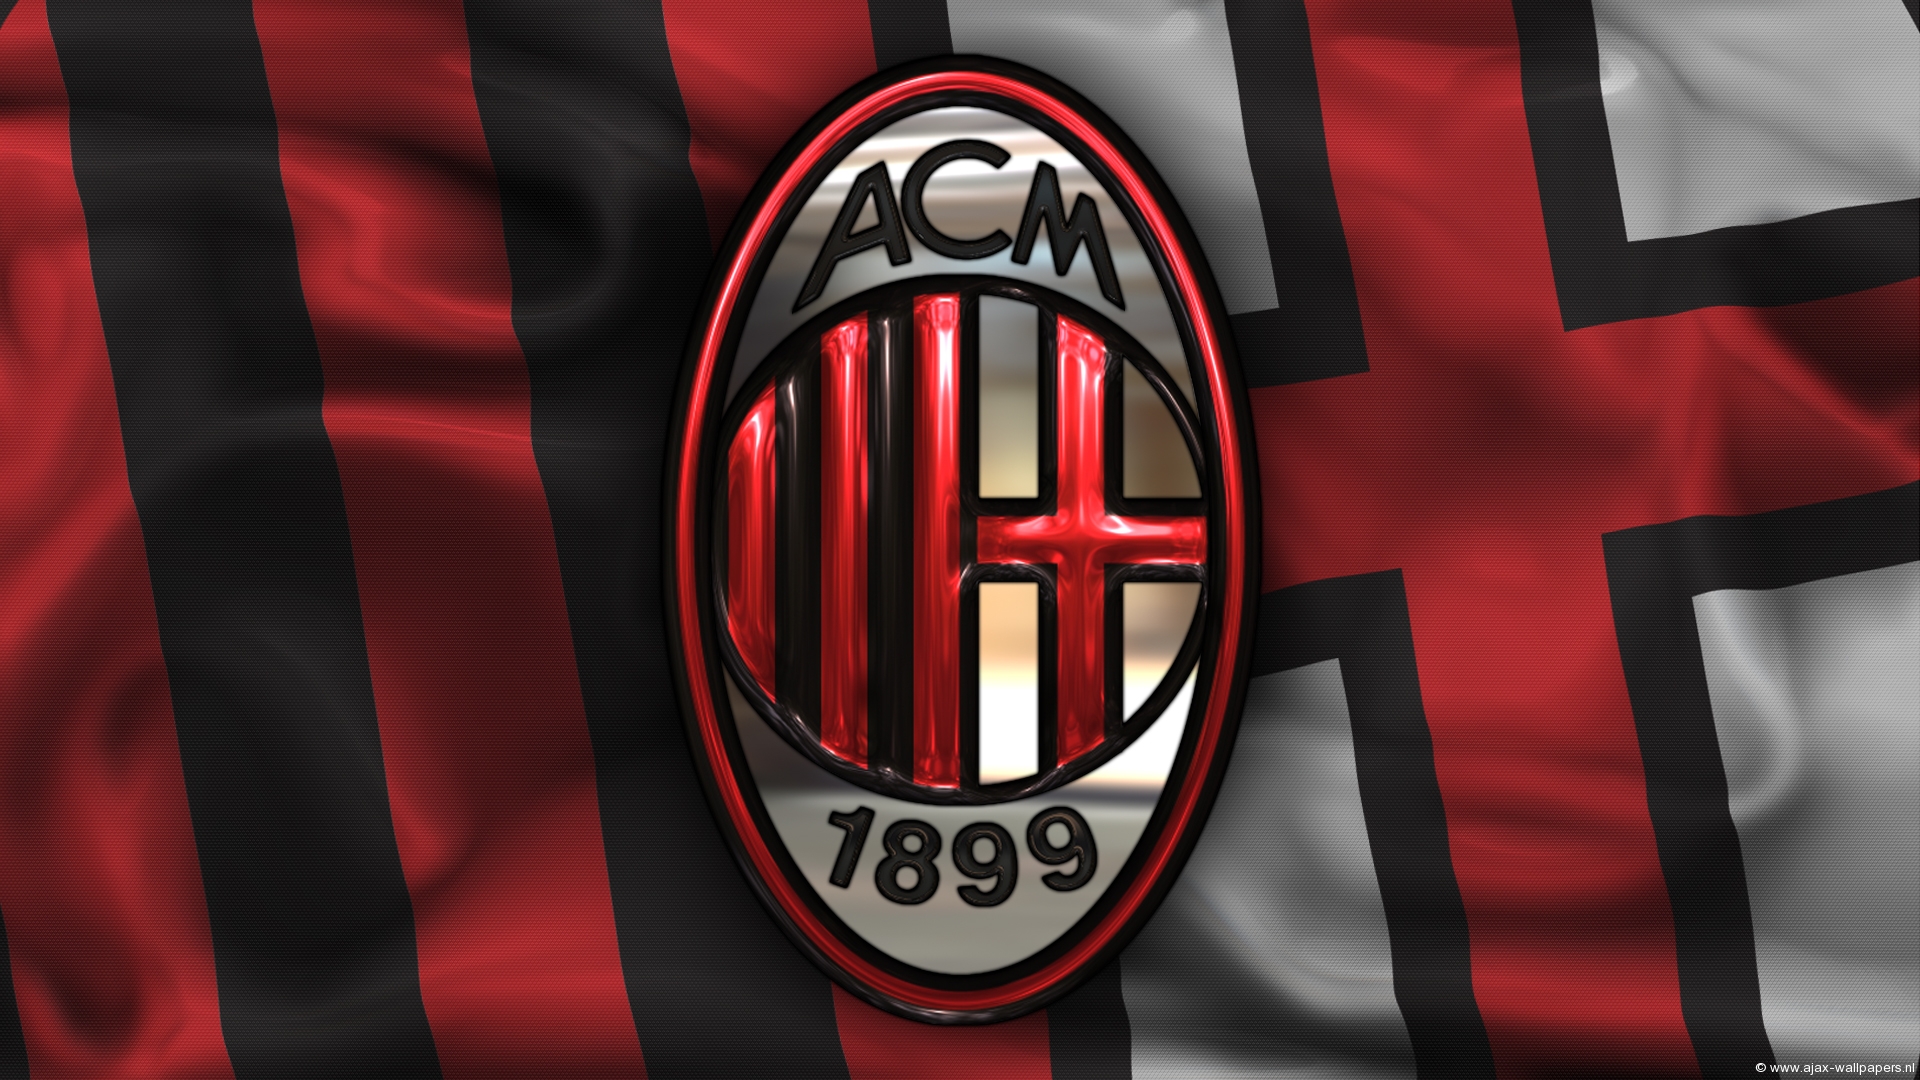 Ac Milan Logo Wallpaper Themes 2015 11812 Wallpaper Cool 1920x1080